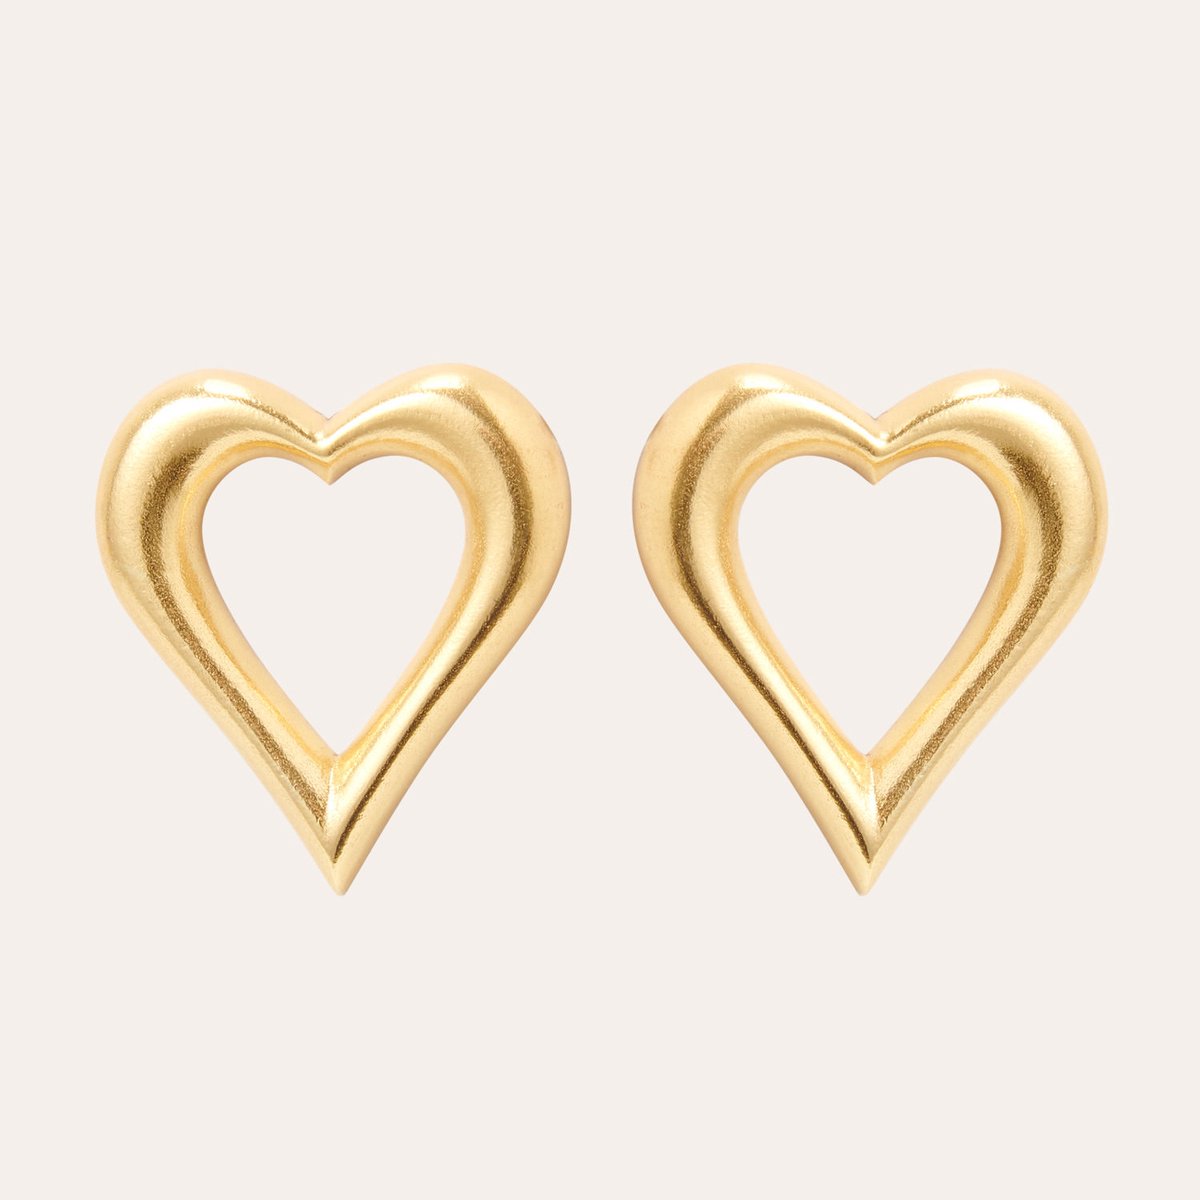 Le Rêve Amsterdam oorbellen met hart- goud op zilver- oorstekers